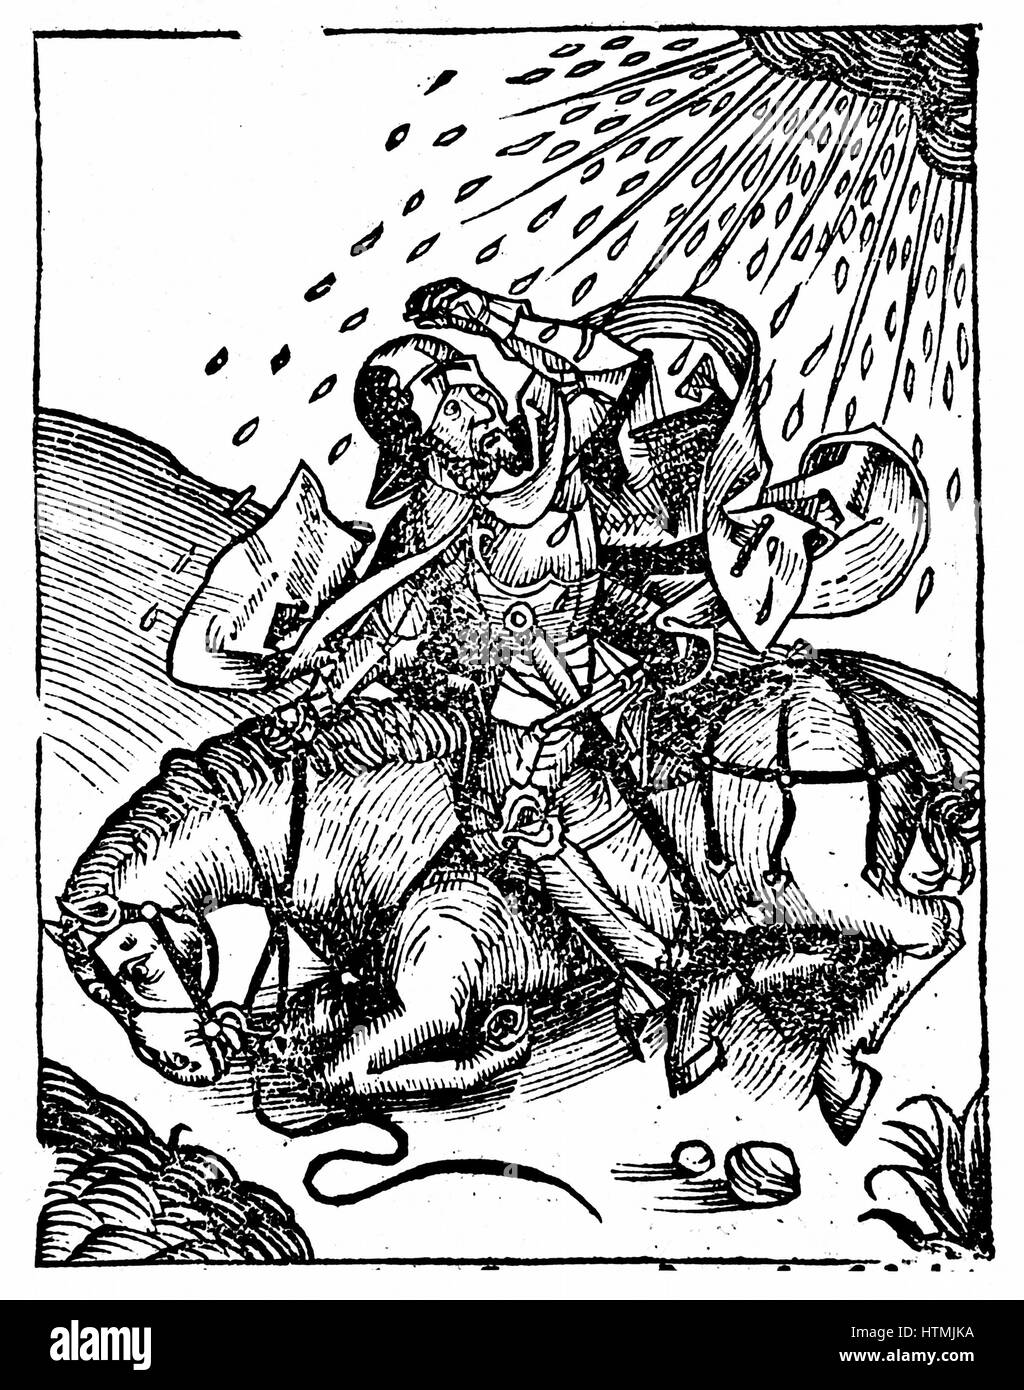 La conversione di san Paolo sulla via di Damasco. Da Hartmann Schedel "Liber chronicarum mundi" Norimberga 1493. Xilografia Foto Stock